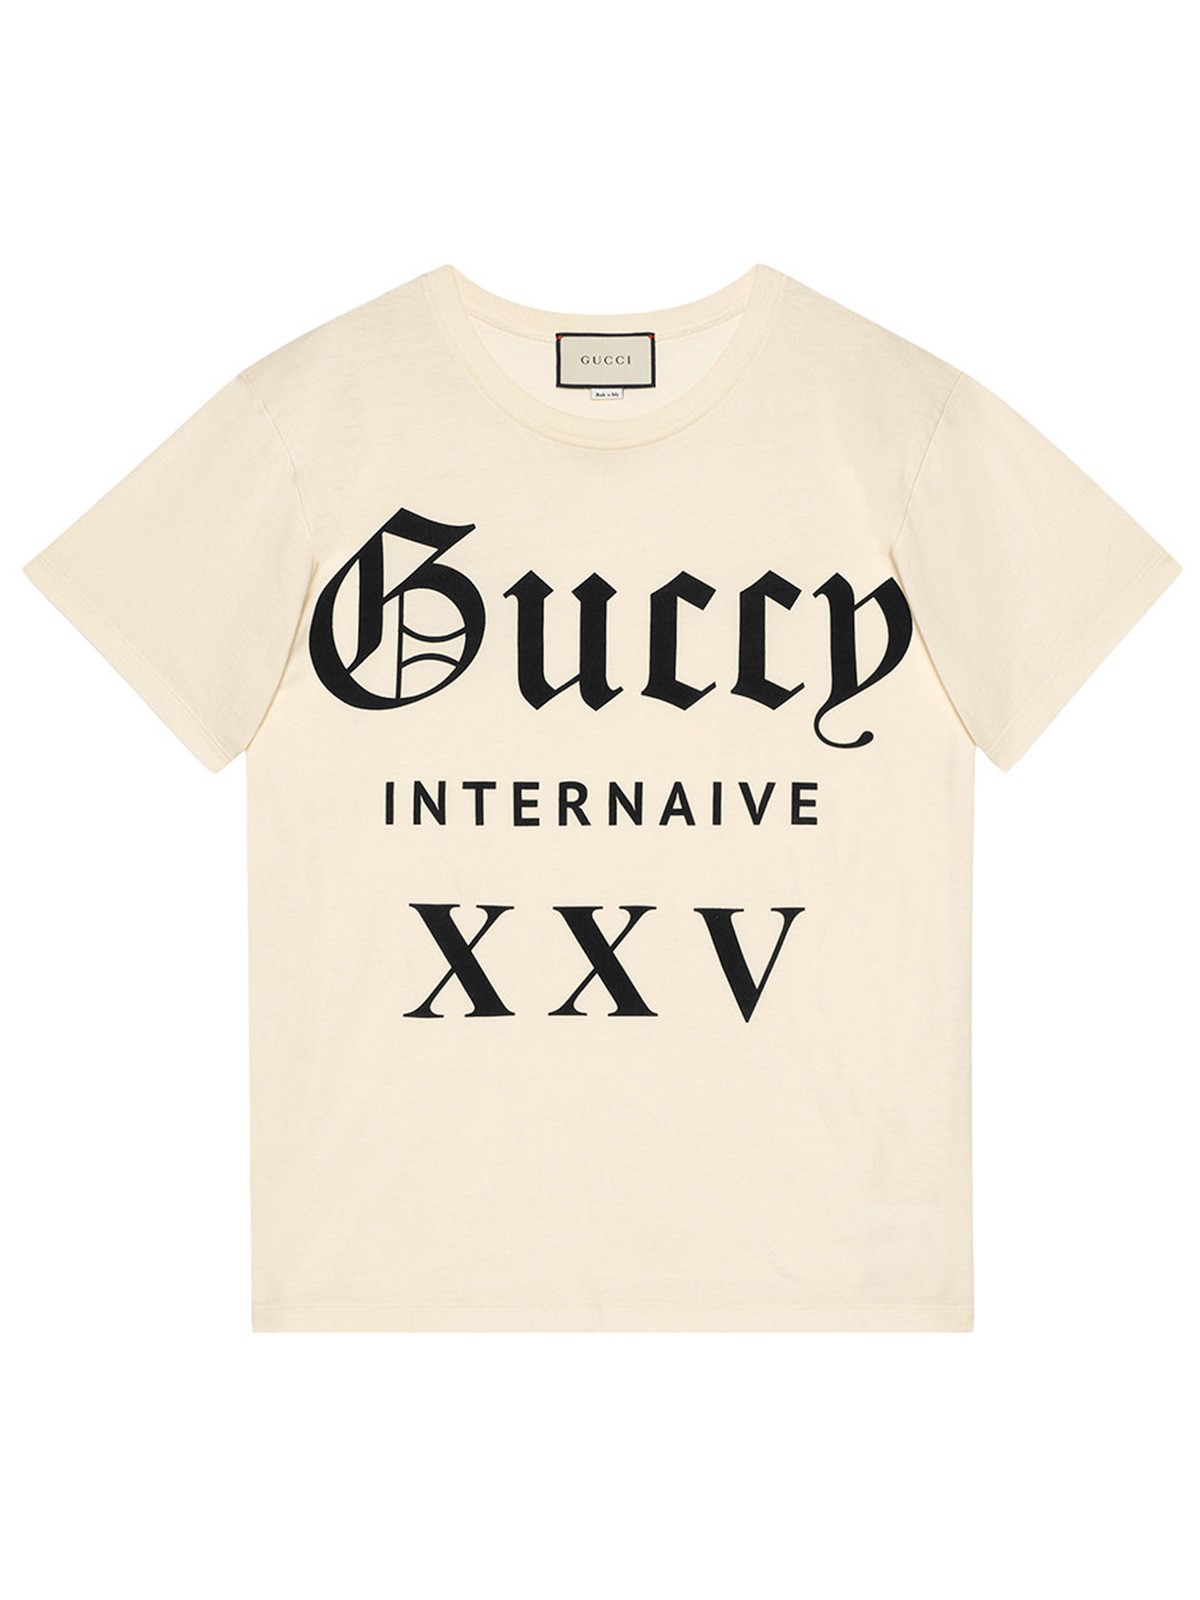 gucci xxv shirt